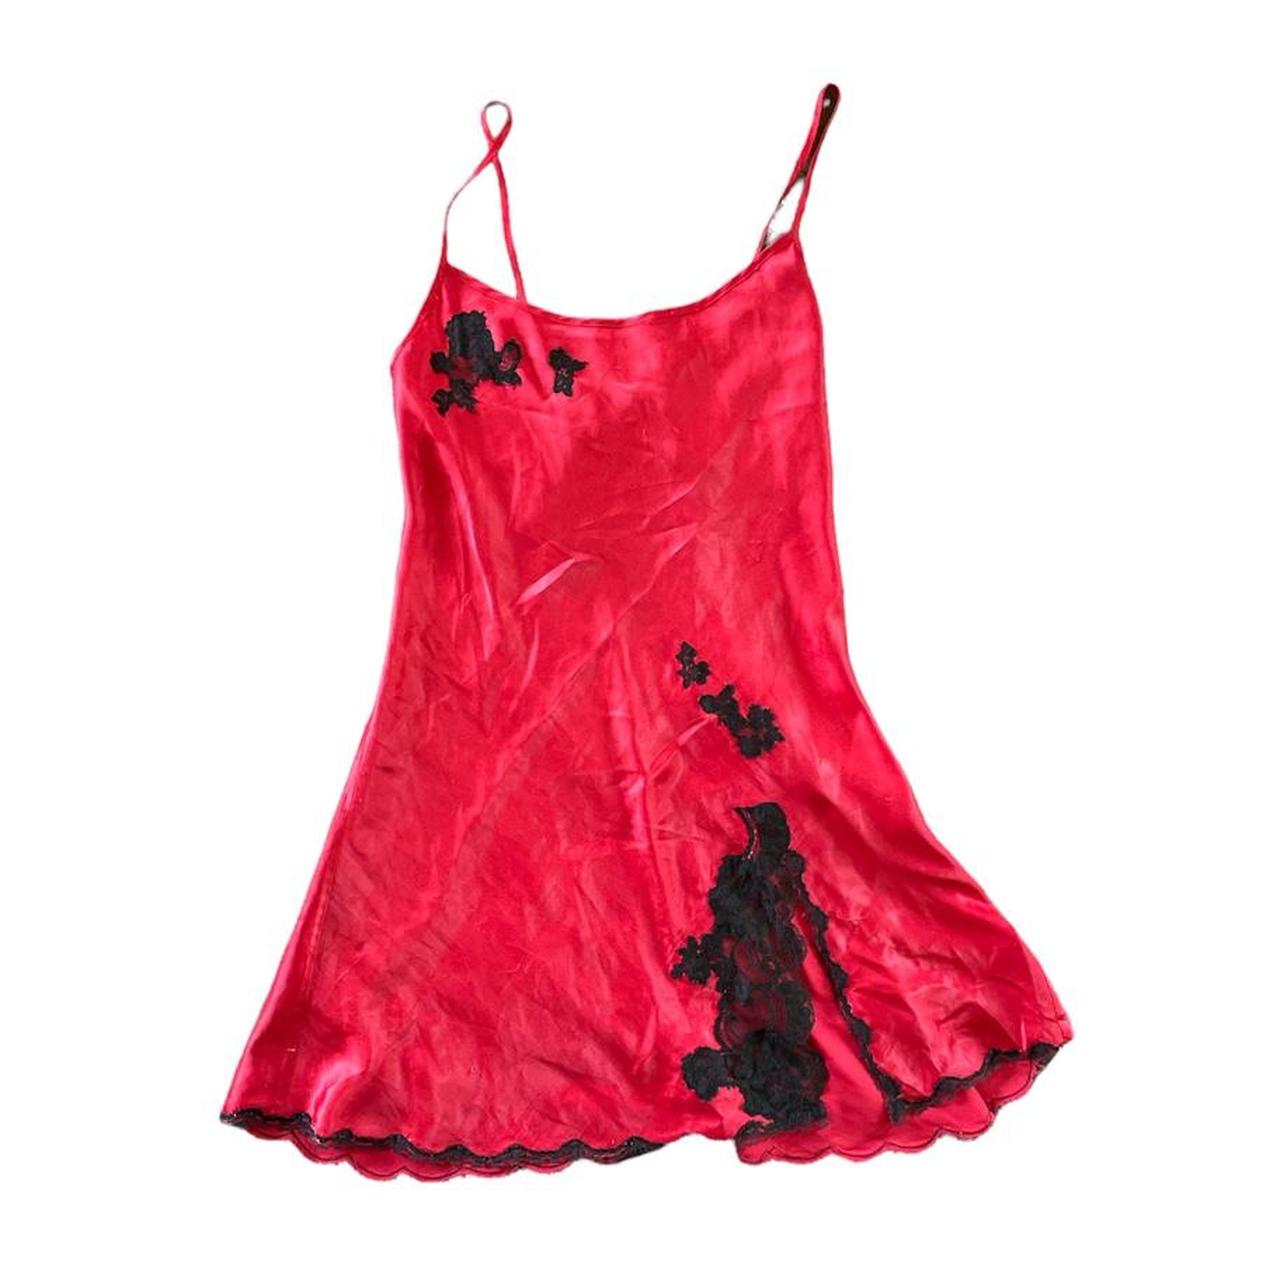 Red Victoria Secret slip dress Adjustable straps... - Depop